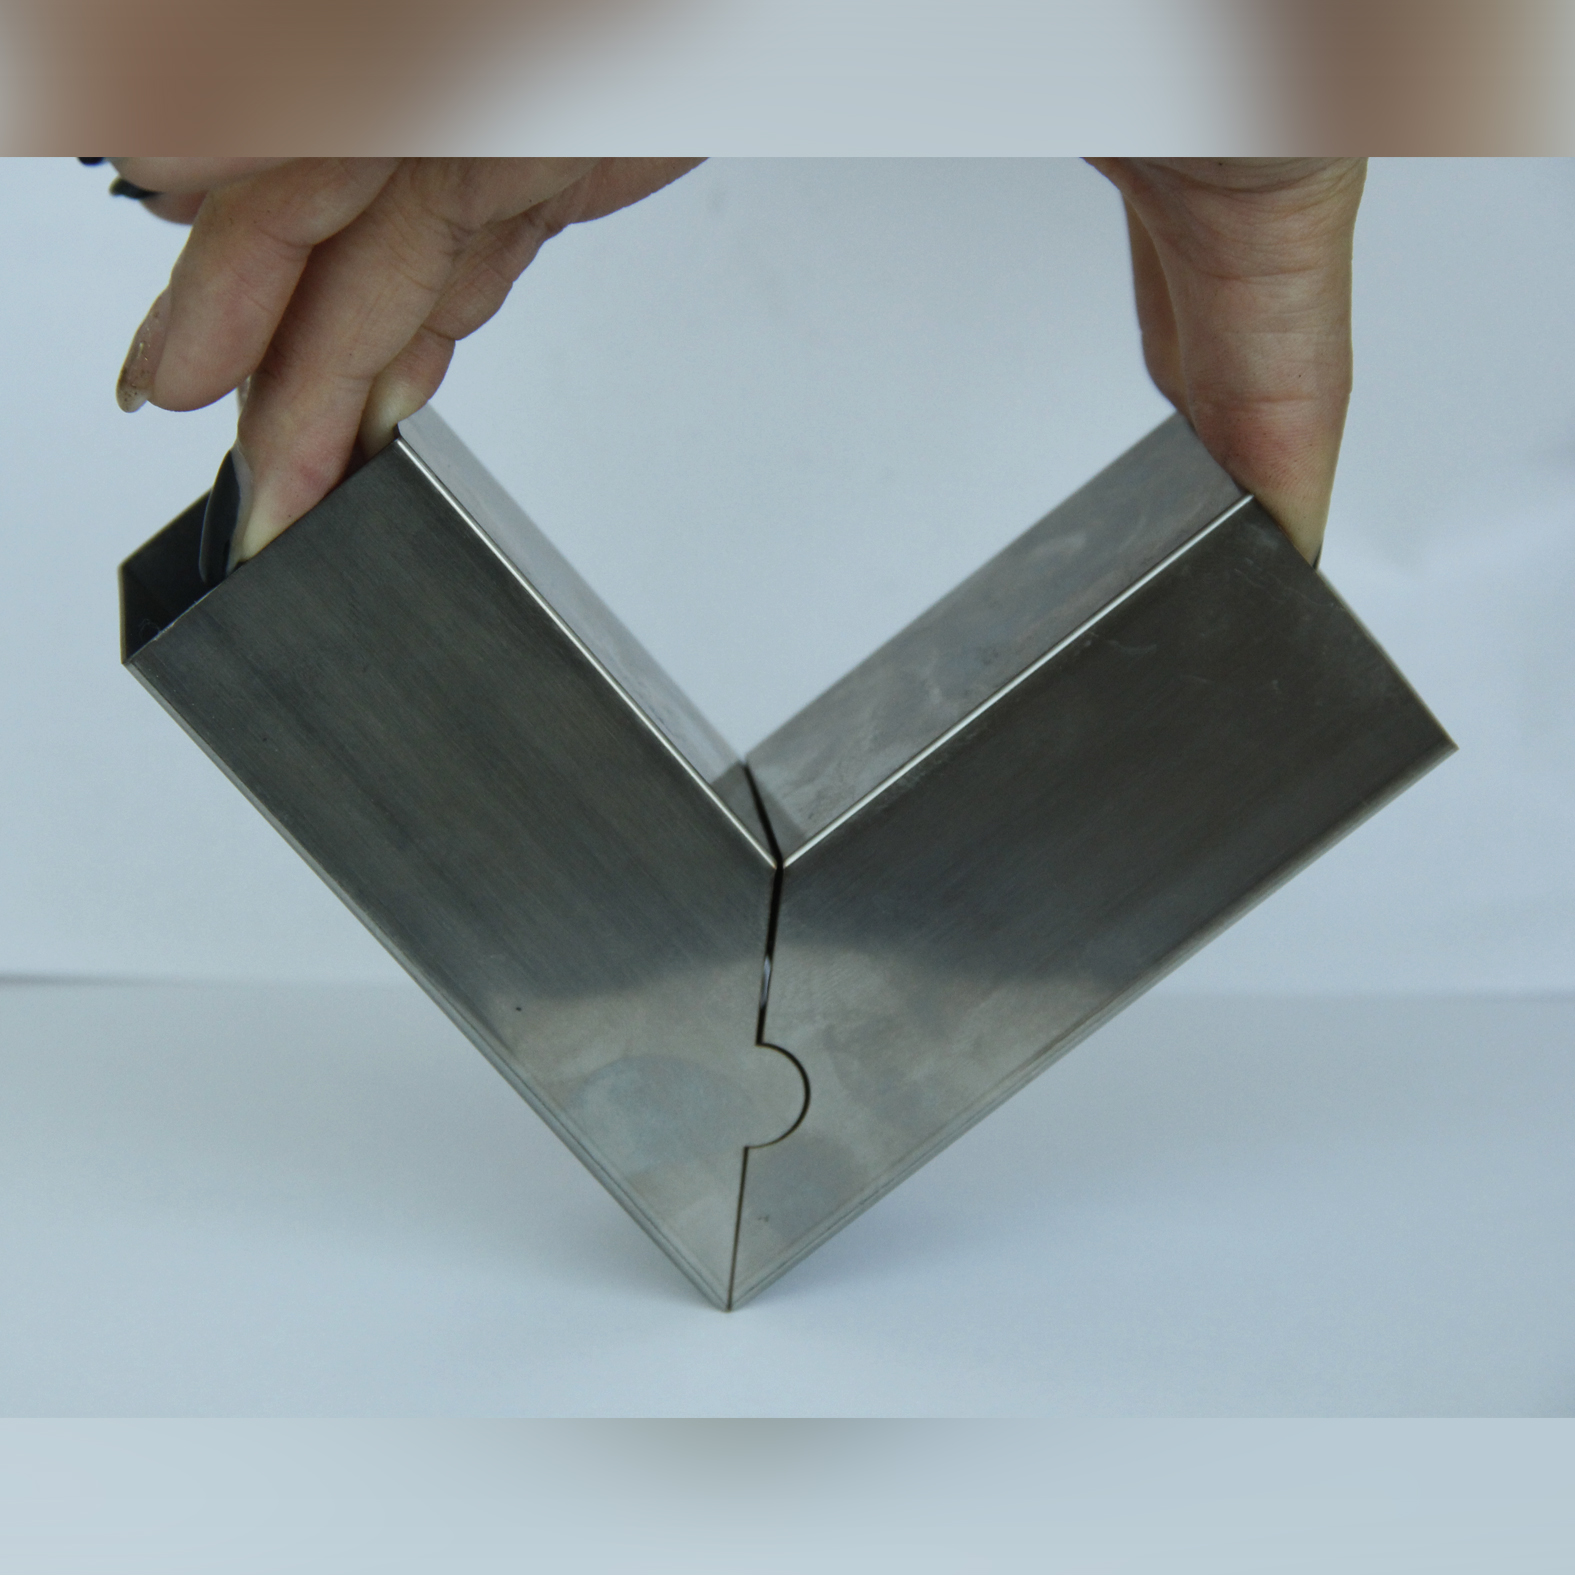 Vláknová laserová řezačka pro řezání kovových ocelových trubek